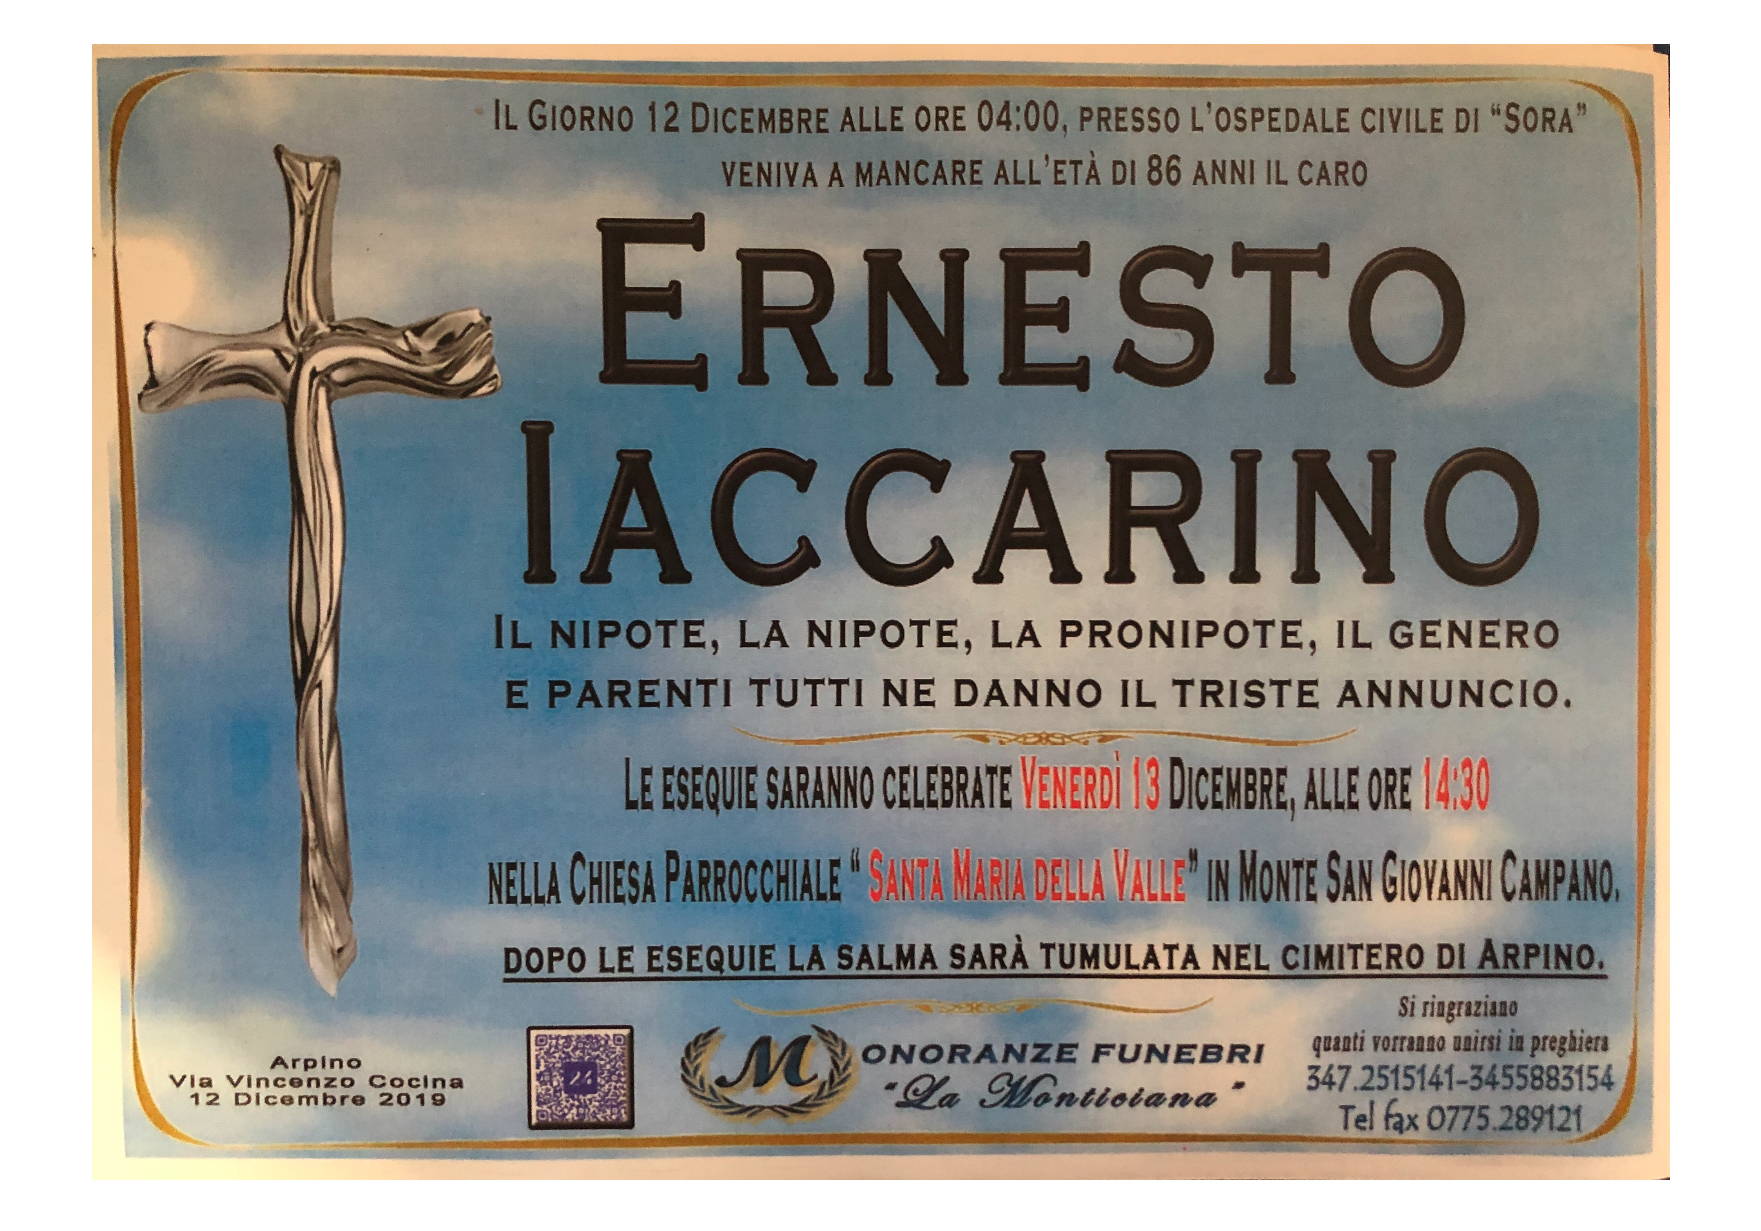 Ernesto Iaccarino